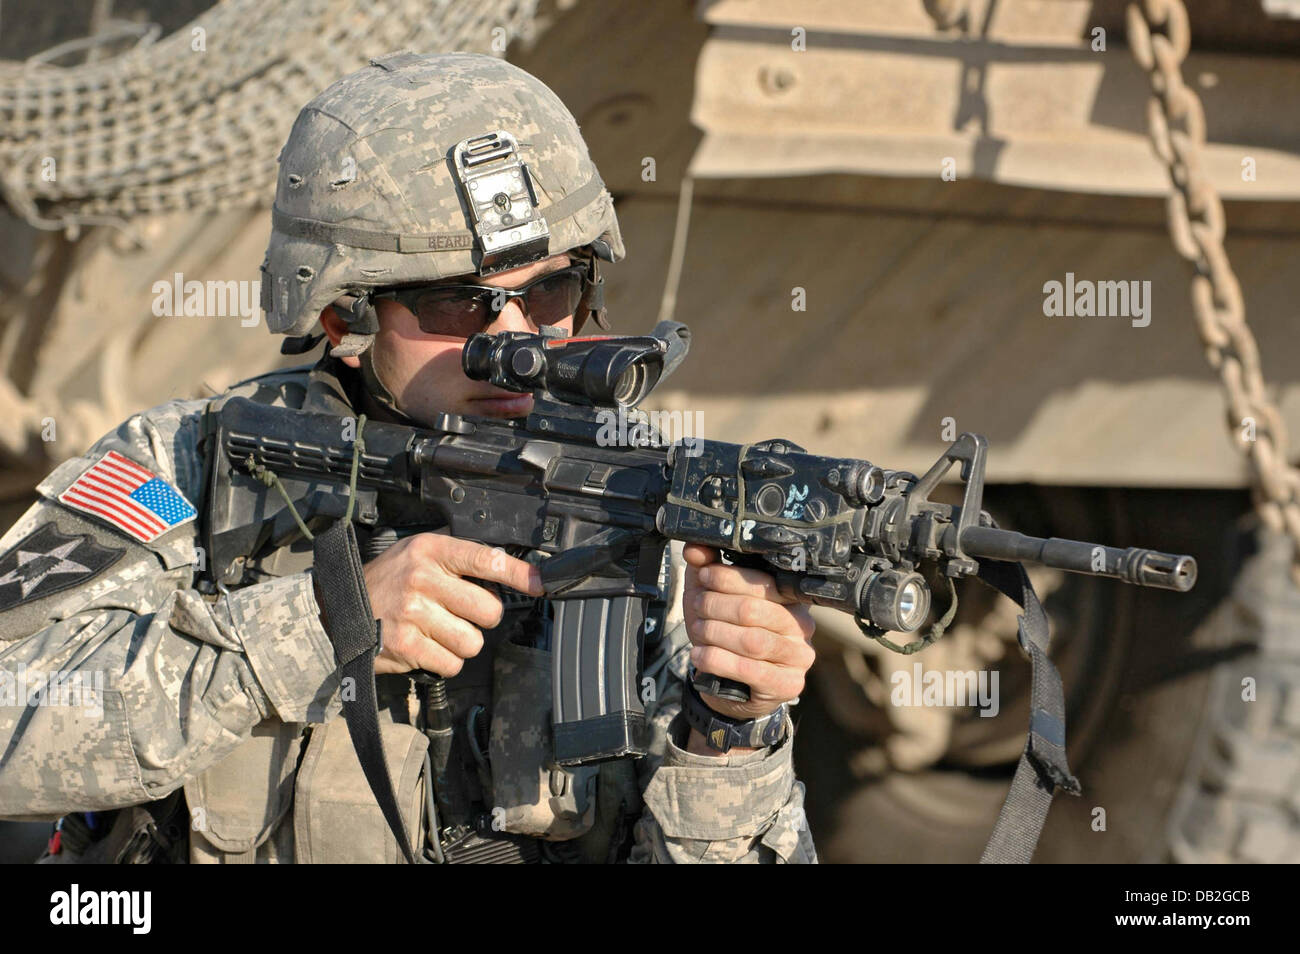 Ein Infanterist des 3. will US Stryker Brigade Combat Team mit dieser M4A1 Karabiner während eines Suchvorgangs in Bagdad, Irak, März 2007. Der remote gesteuerten Explosive Ordnance Entsorgung Roboter wird verwendet, um potenzielle improvisierten Sprengkörpern (IED) zu untersuchen. Foto: Carl Schulze Stockfoto